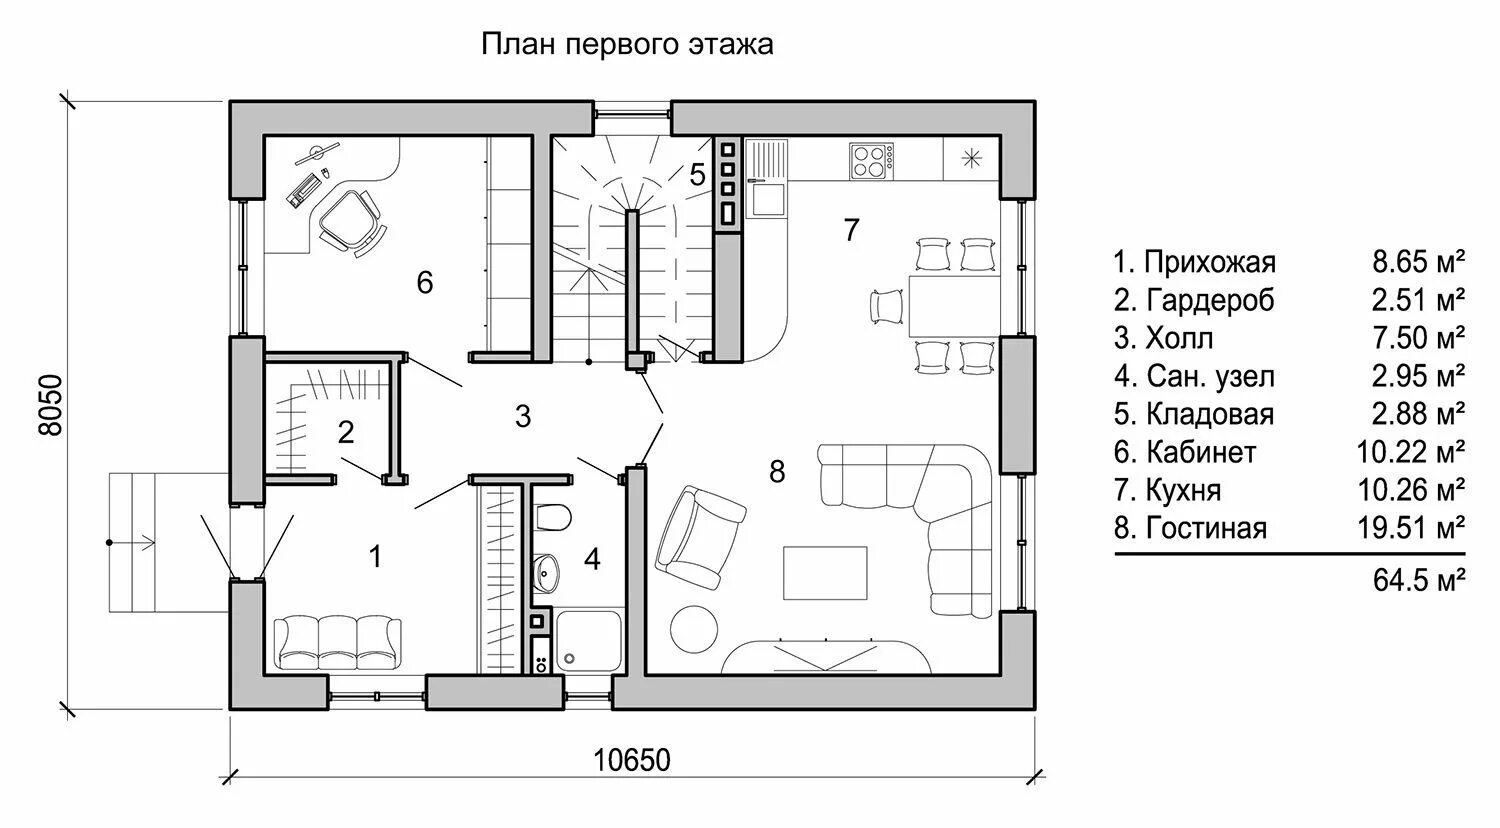 Размеры первого этажа. Проекты домов чертежи. План первого этажа. Схемы планировки домов. Чертежи двухэтажных домов.